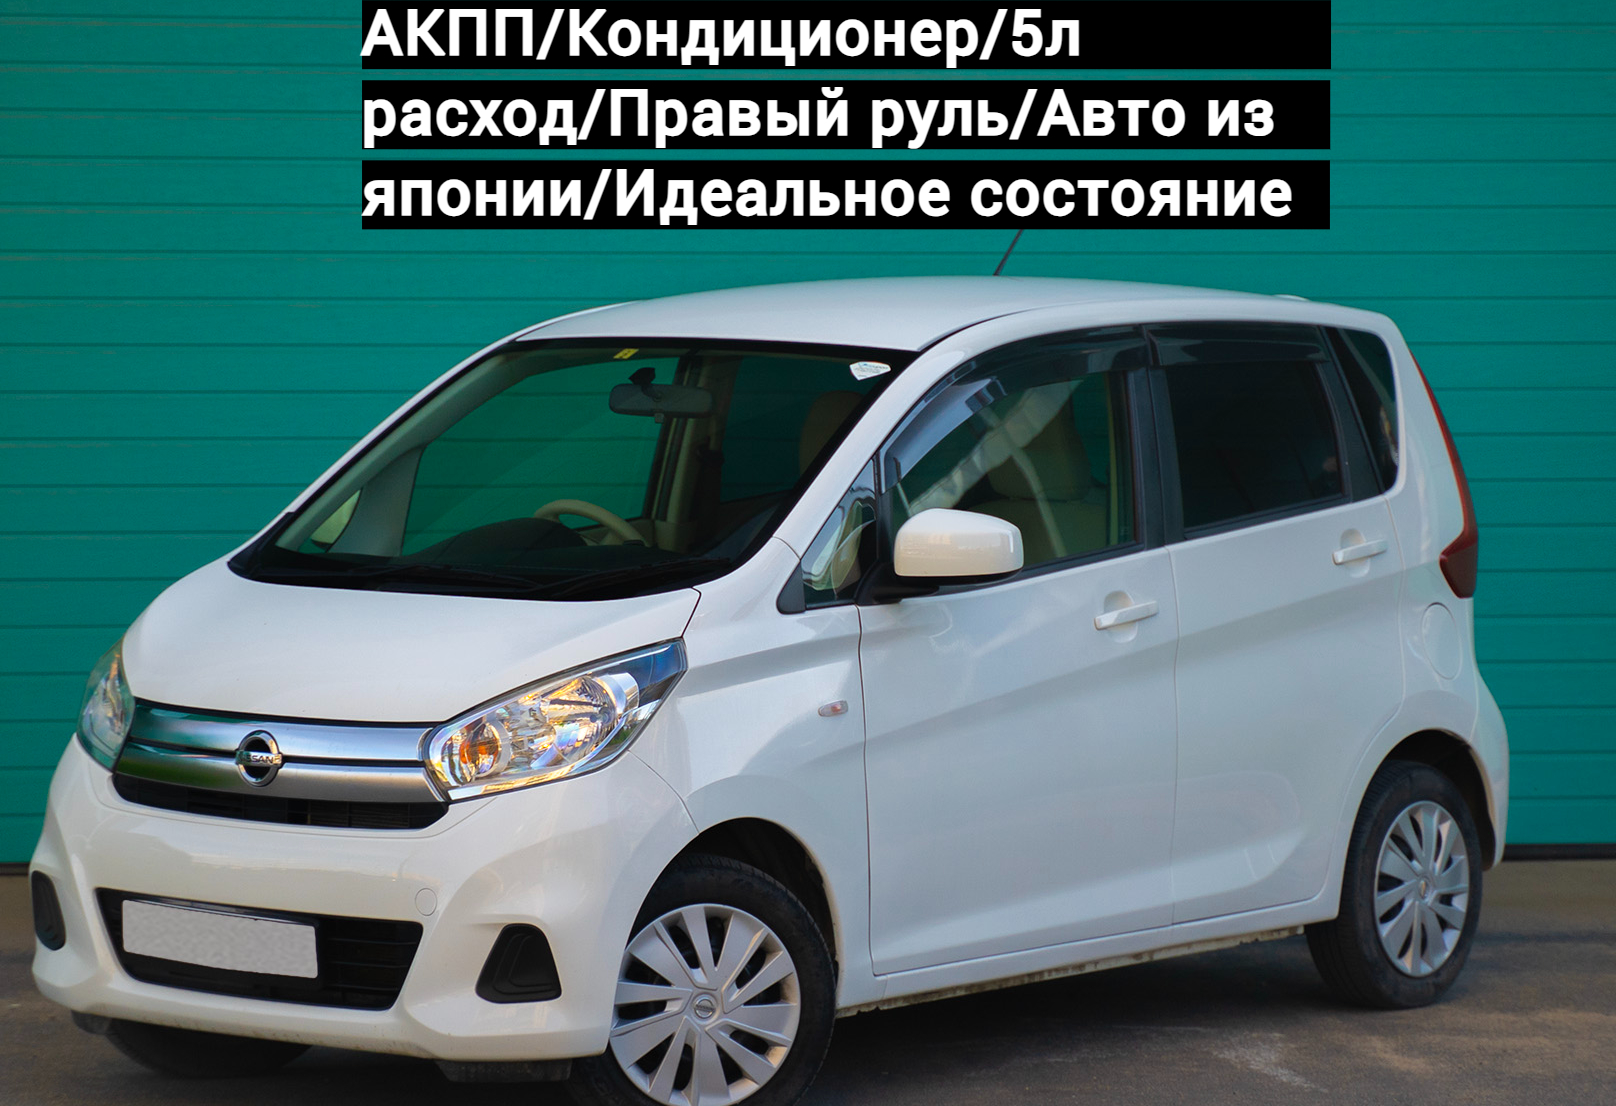 Аренда nissan dayz эконом класса 2017 года в городе Москва Парнас от 1500 руб./сутки, передний привод, двигатель: бензин, объем 0.7 литров, ОСАГО (Мультидрайв), без водителя, недорого - RentRide